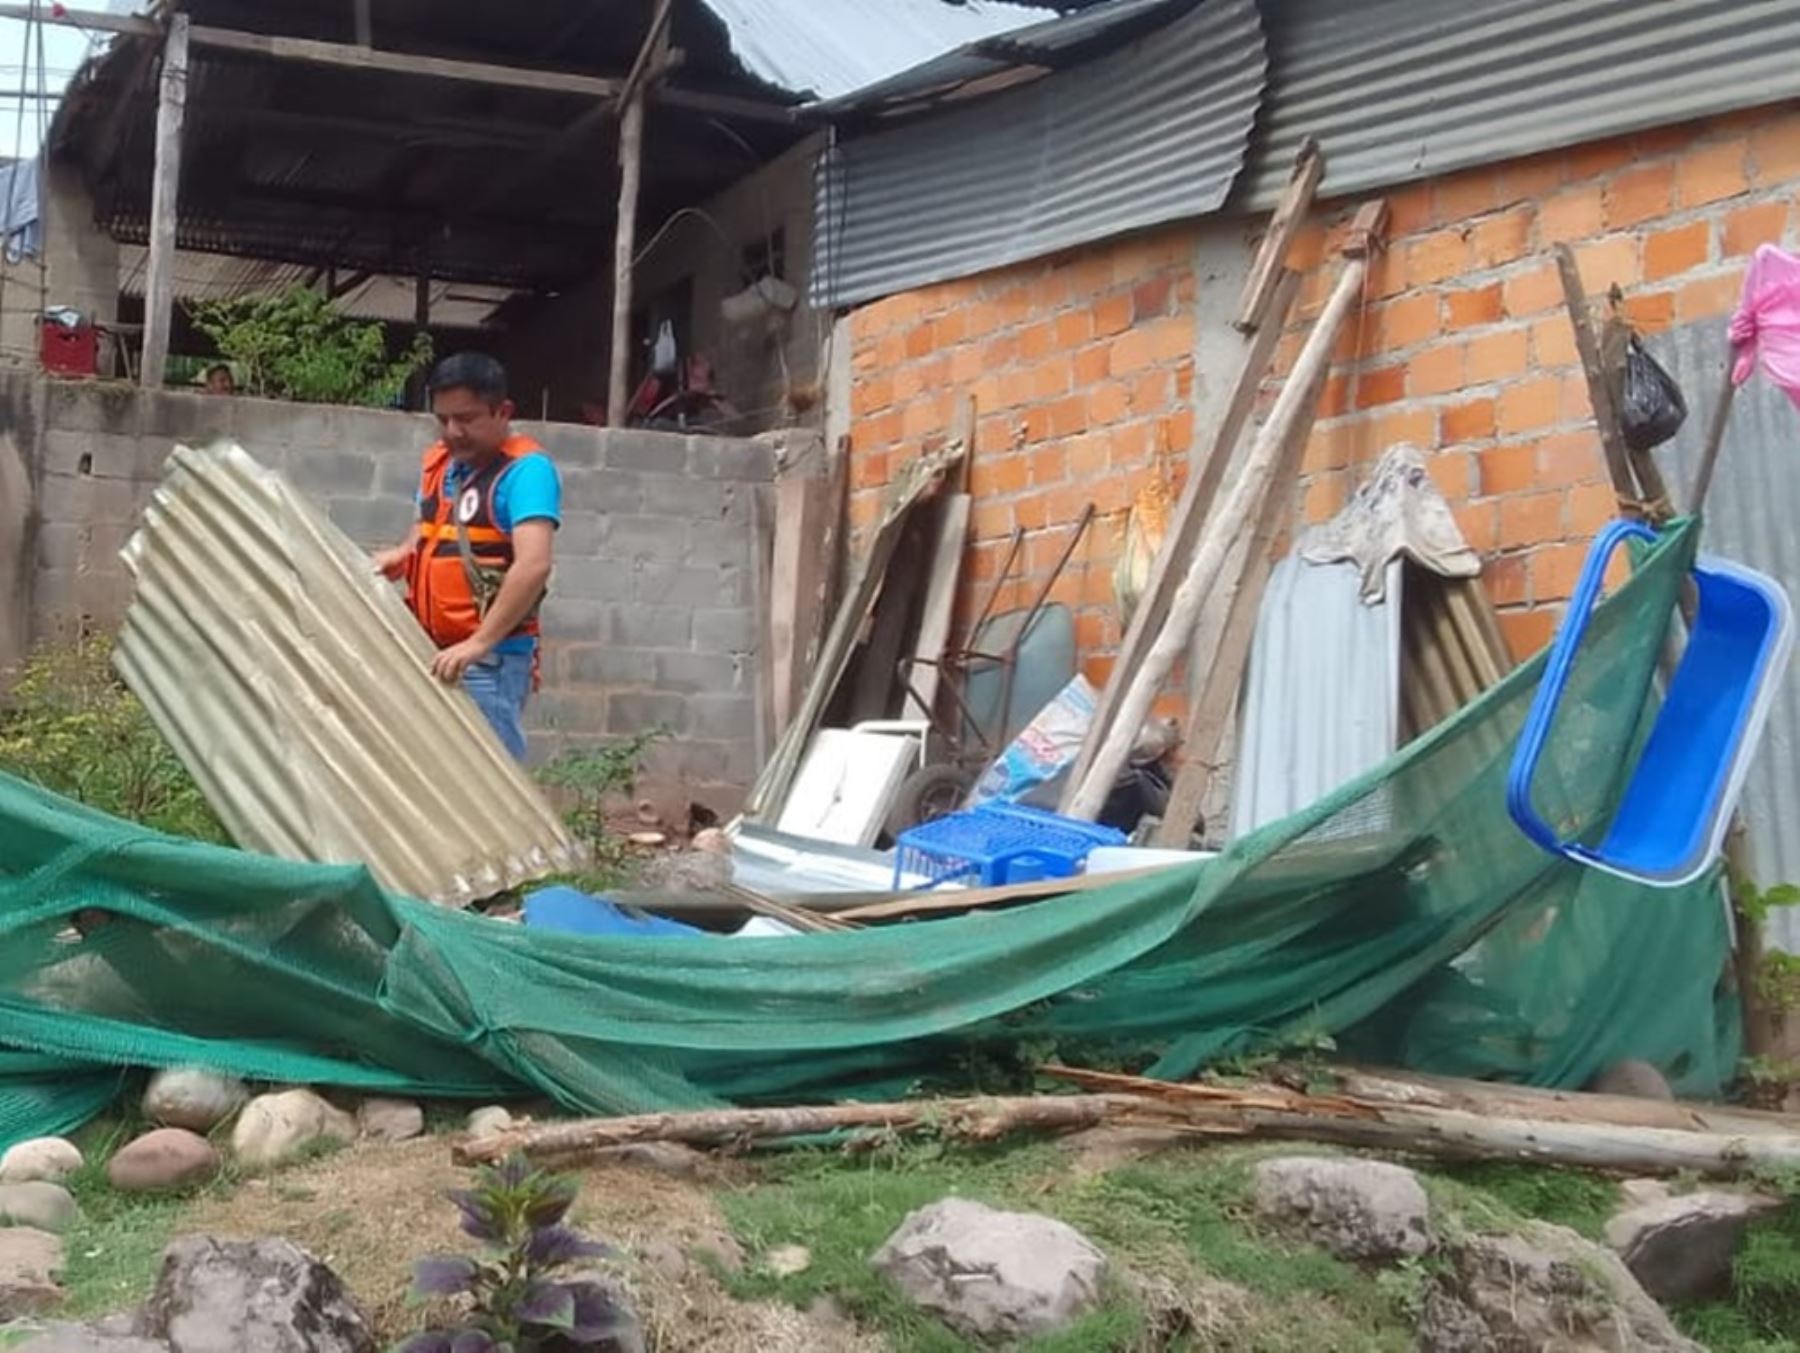 El Gobierno Regional de San Martín entregó ayuda humanitaria a las familias damnificadas por vientos fuertes que afectó a varios centros poblados del distrito de Tabalosos, provincia de Lamas. ANDINA/Difusión